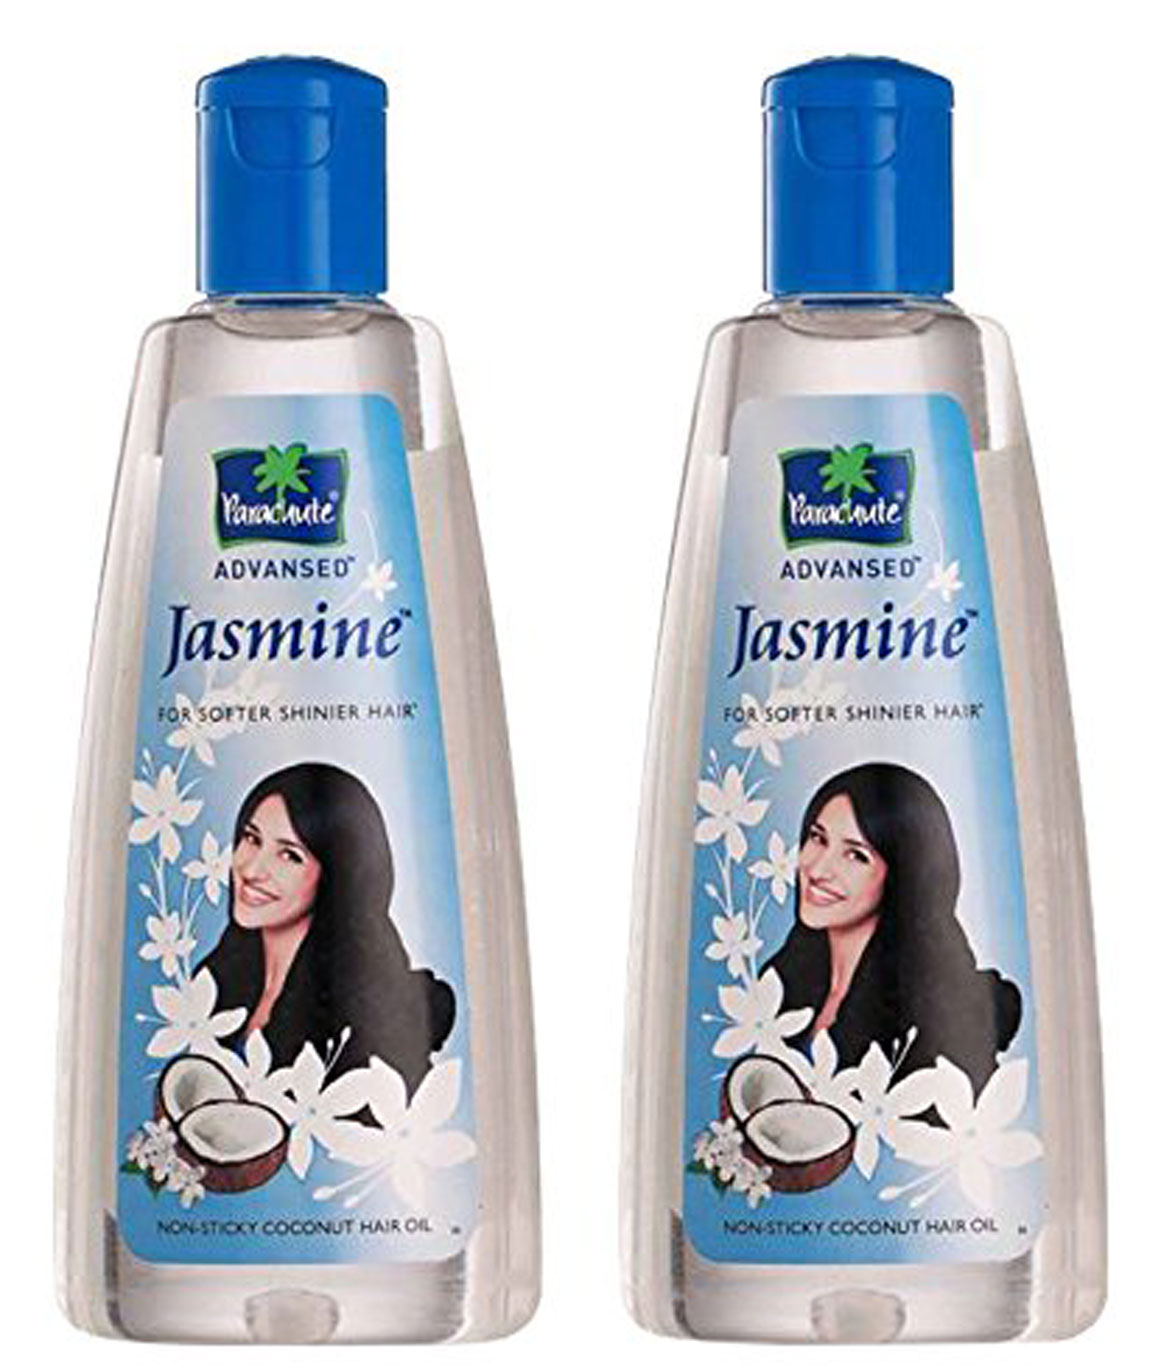 Parachute Advanced Jasmine Hair OIL  Reddymart